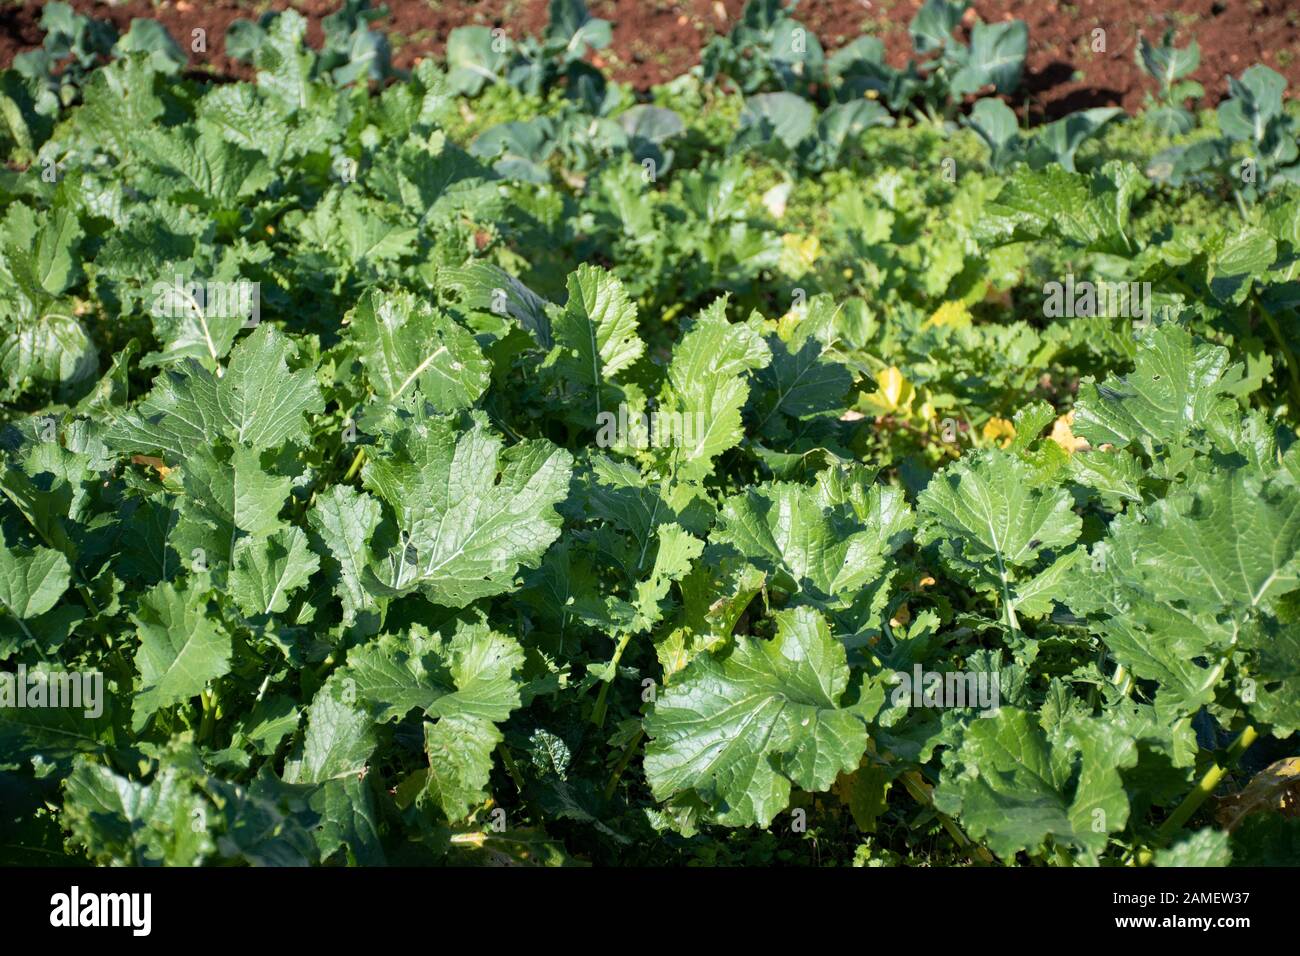 Le cime di rapa, rapini o broccoli rabe in un campo, verde crucifere vegetale, verdure, piatti della cucina mediterranea Foto Stock